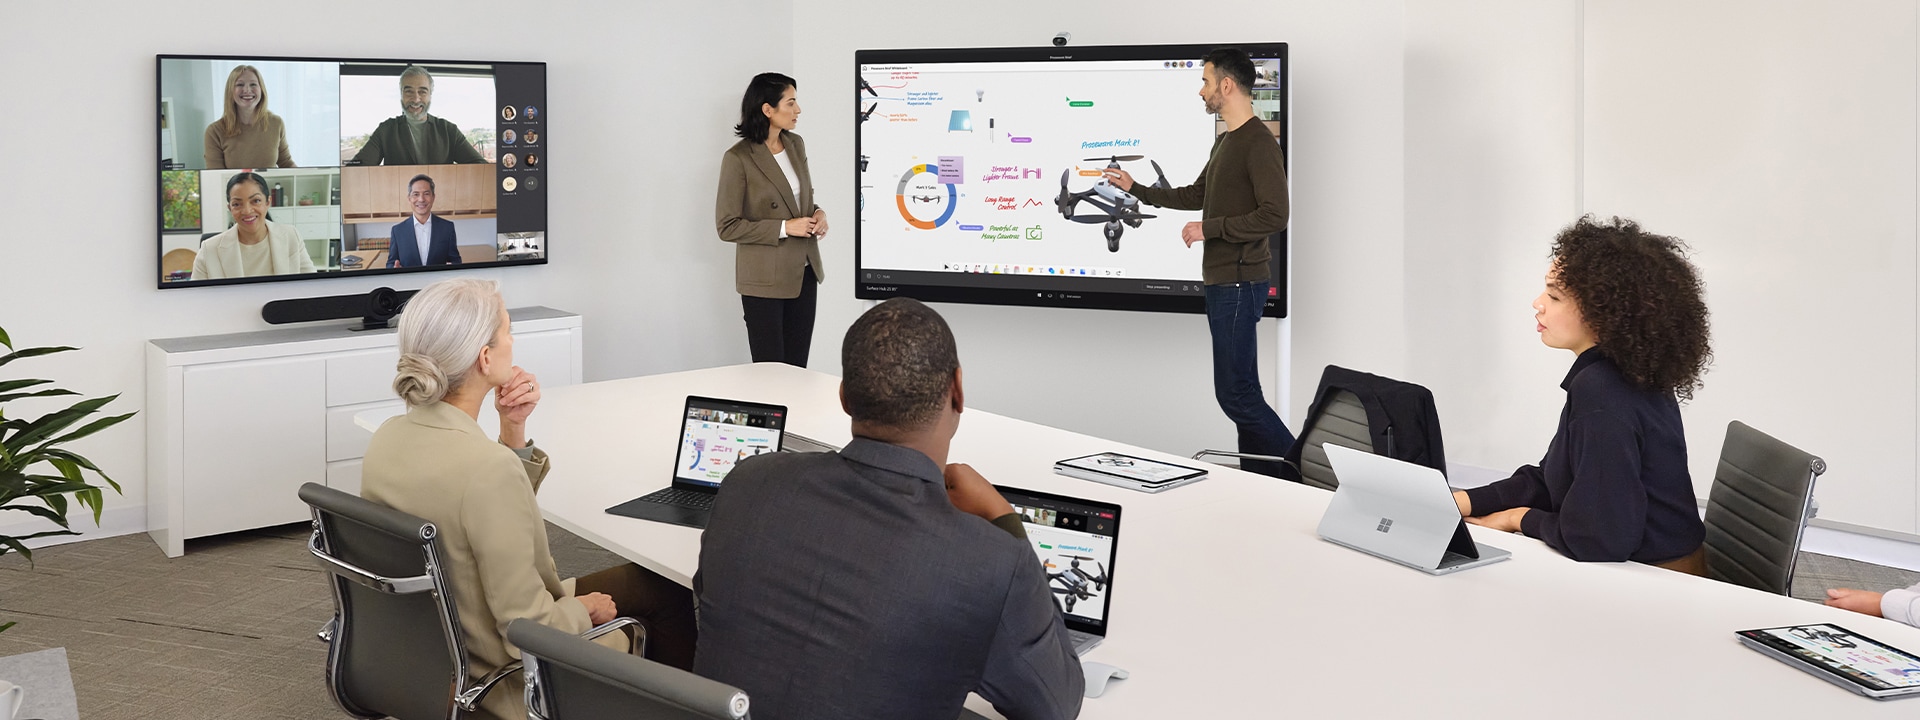 Zwei Kollegen arbeiten über das Surface Hub 2S zusammen und leiten gleichzeitig eine virtuelle Teams-Besprechung auf einem Surface-Laptop auf einem Schreibtisch in der Nähe.